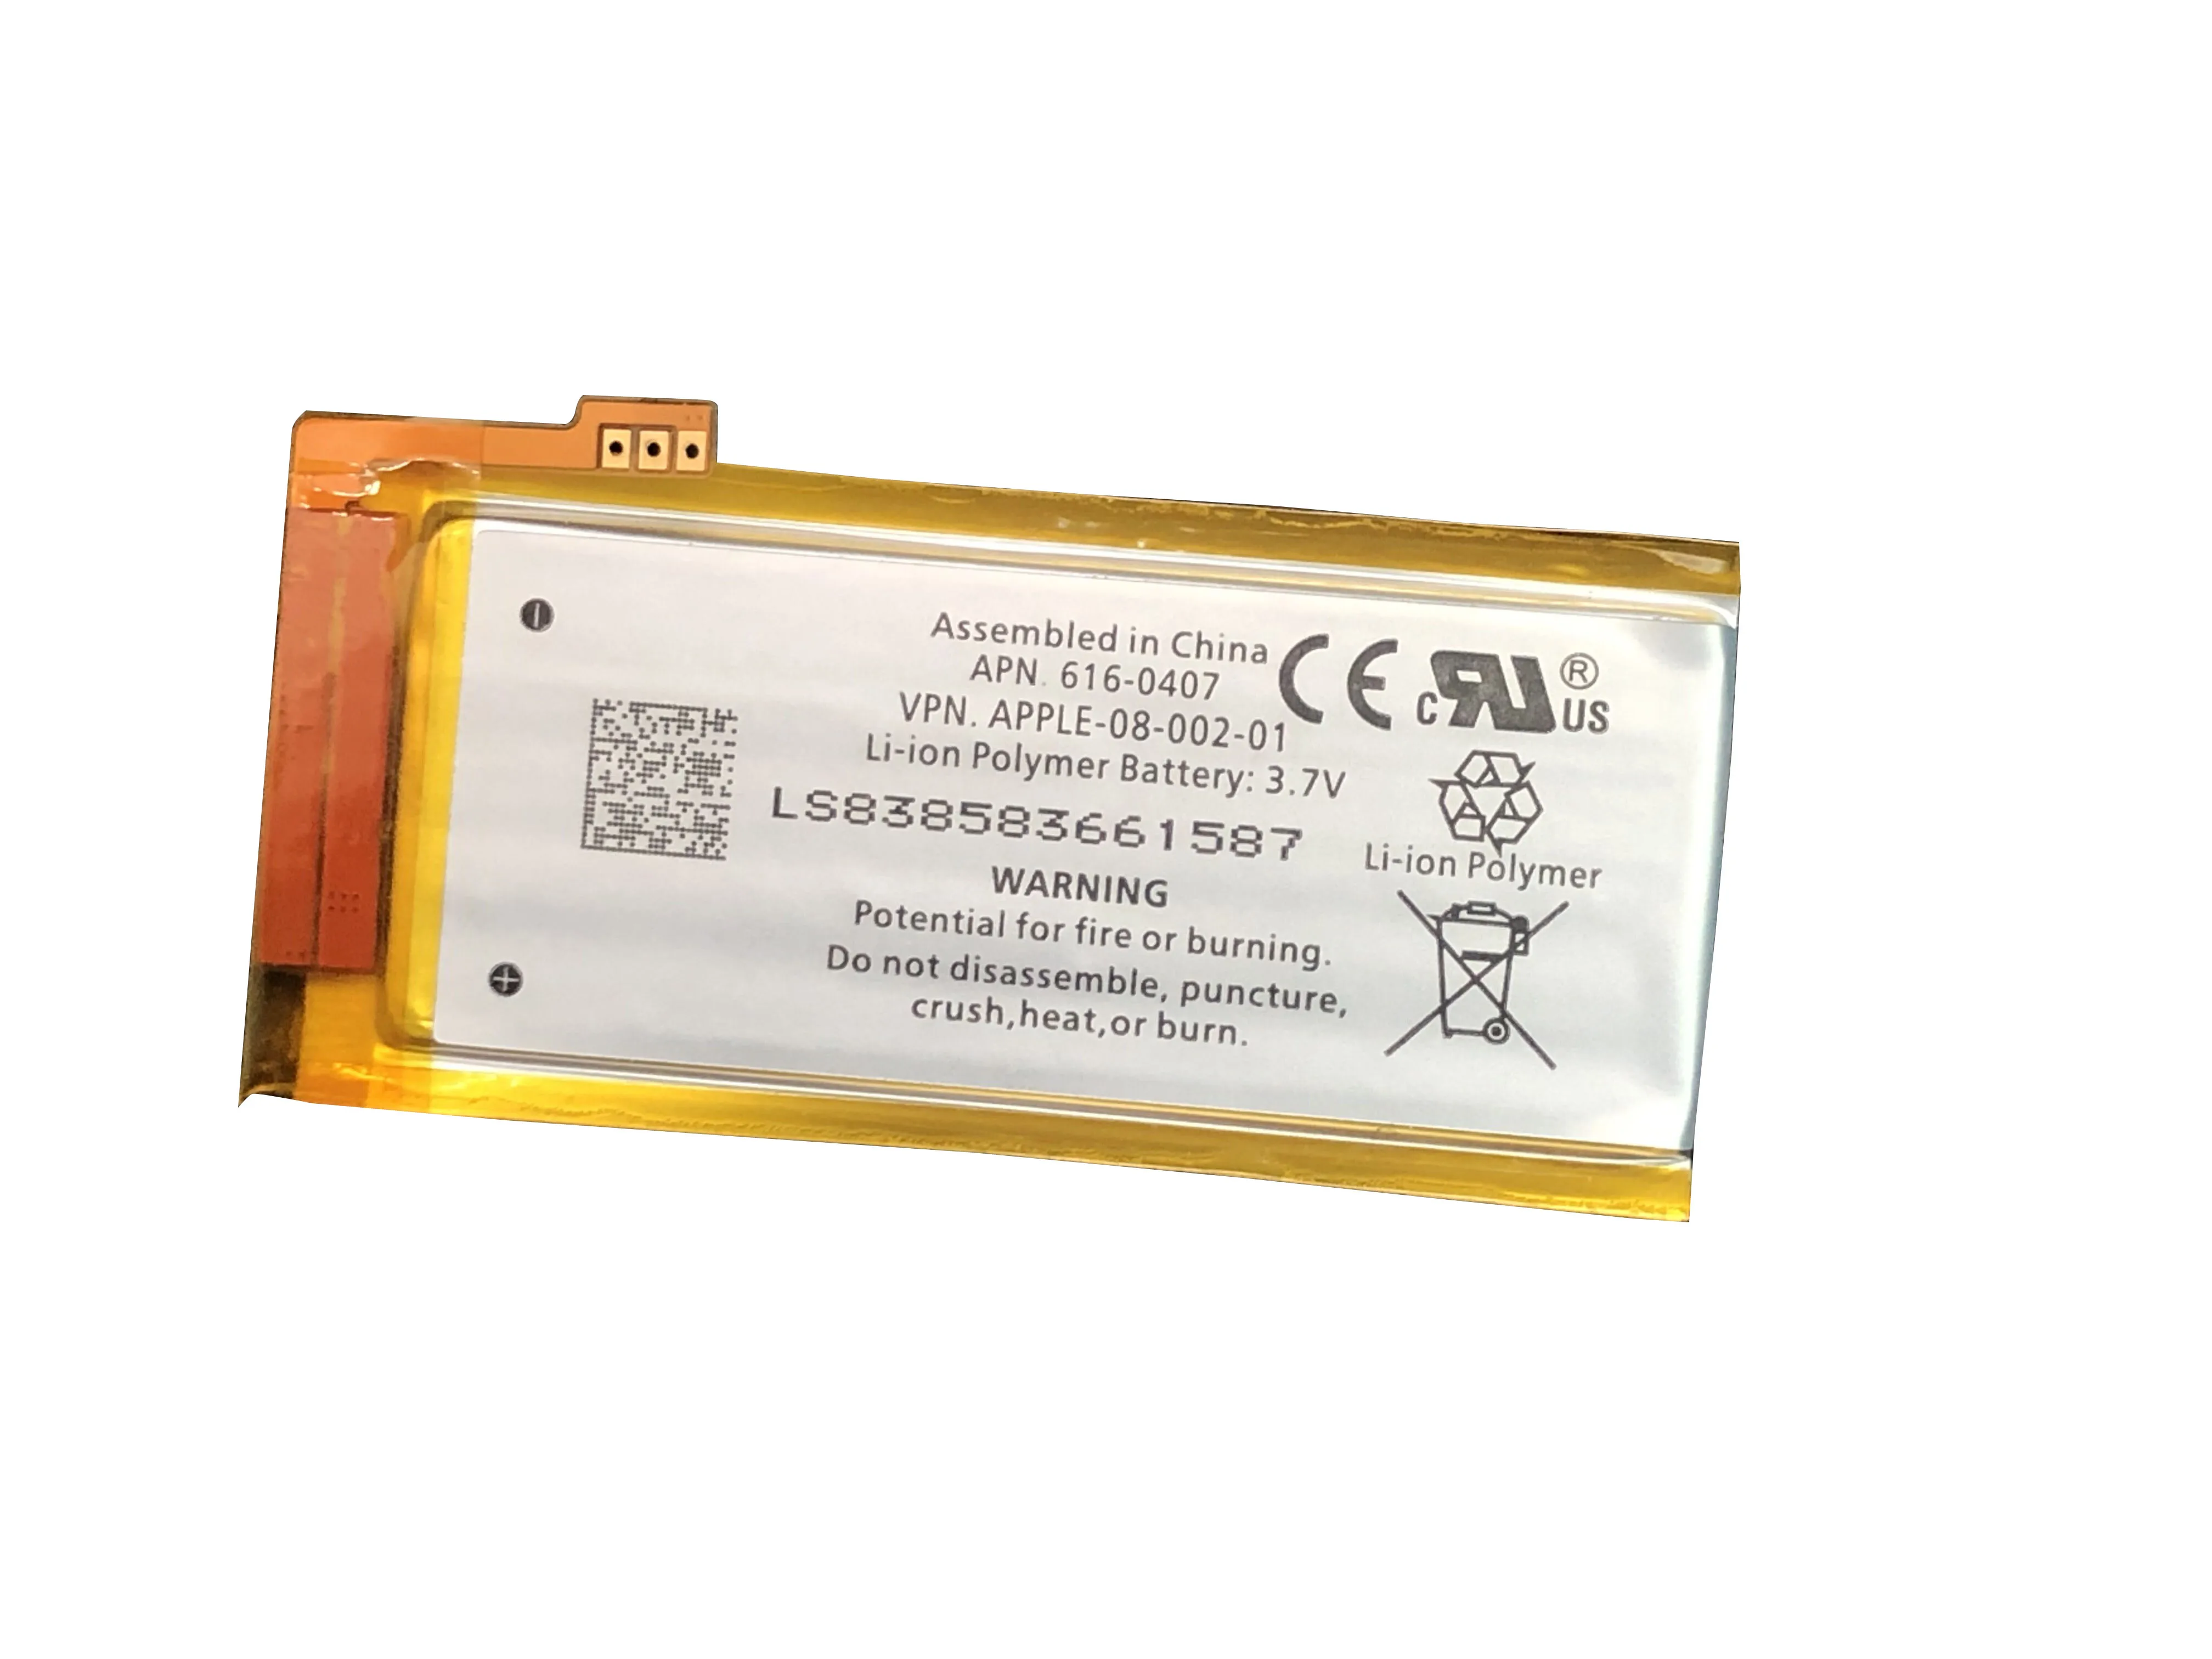 Batería de polímero de iones de litio de 3,7 V para IPod Nano 4, 4ta generación, Kit de herramientas, 616-0407